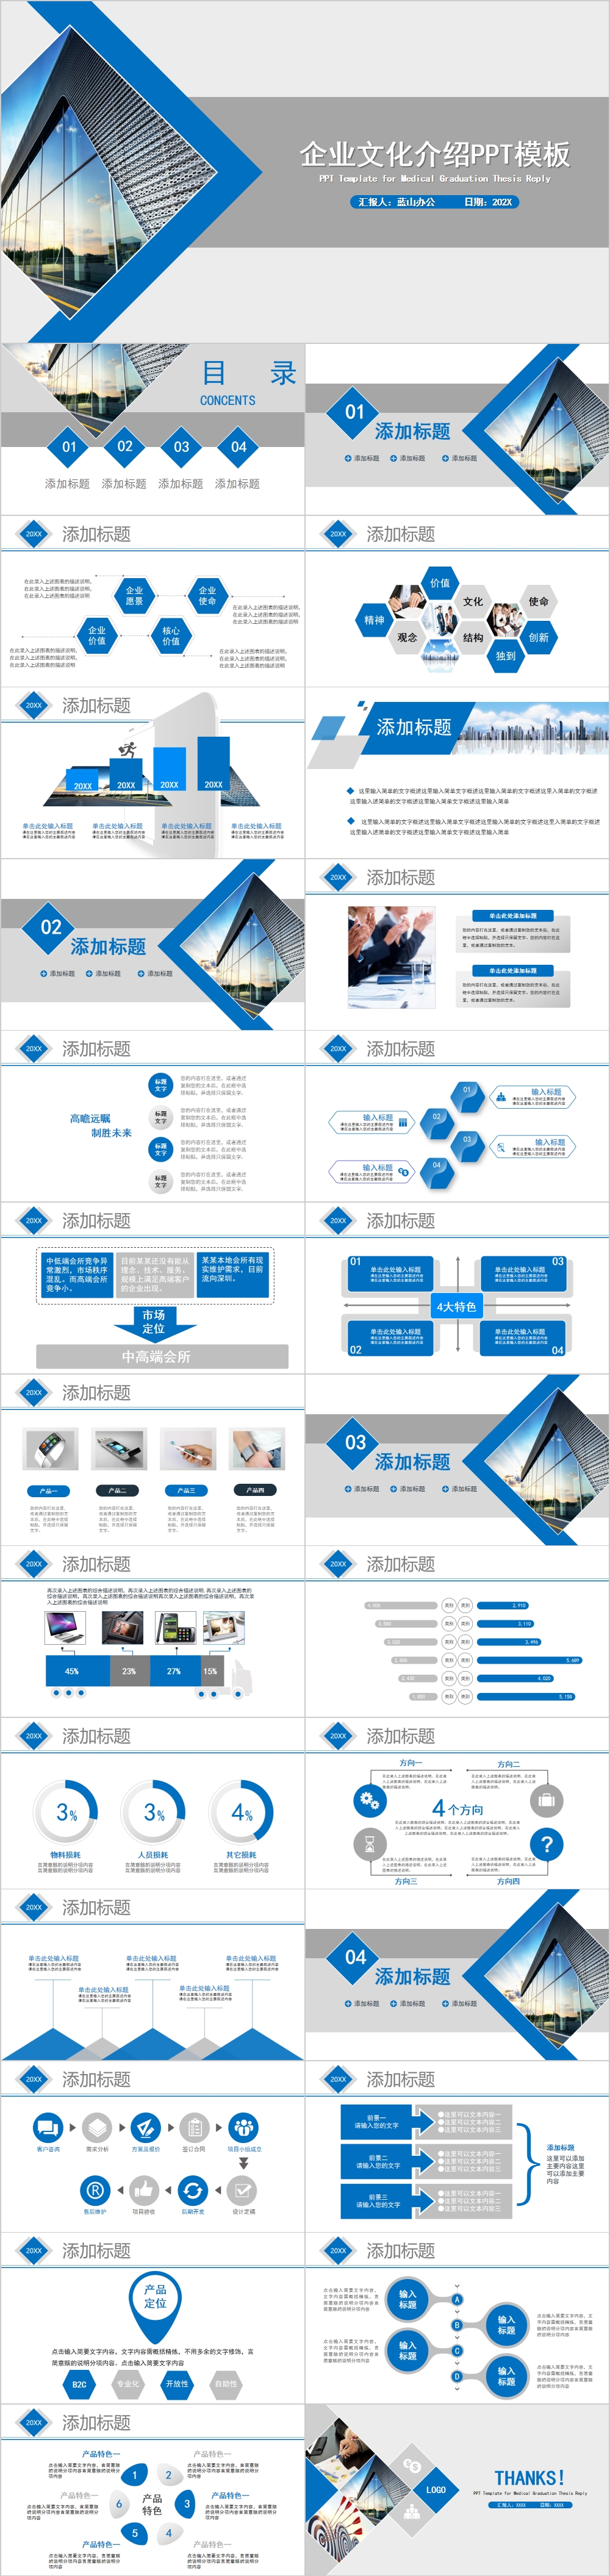 蓝色高端简约风企业文化介绍PPT模板